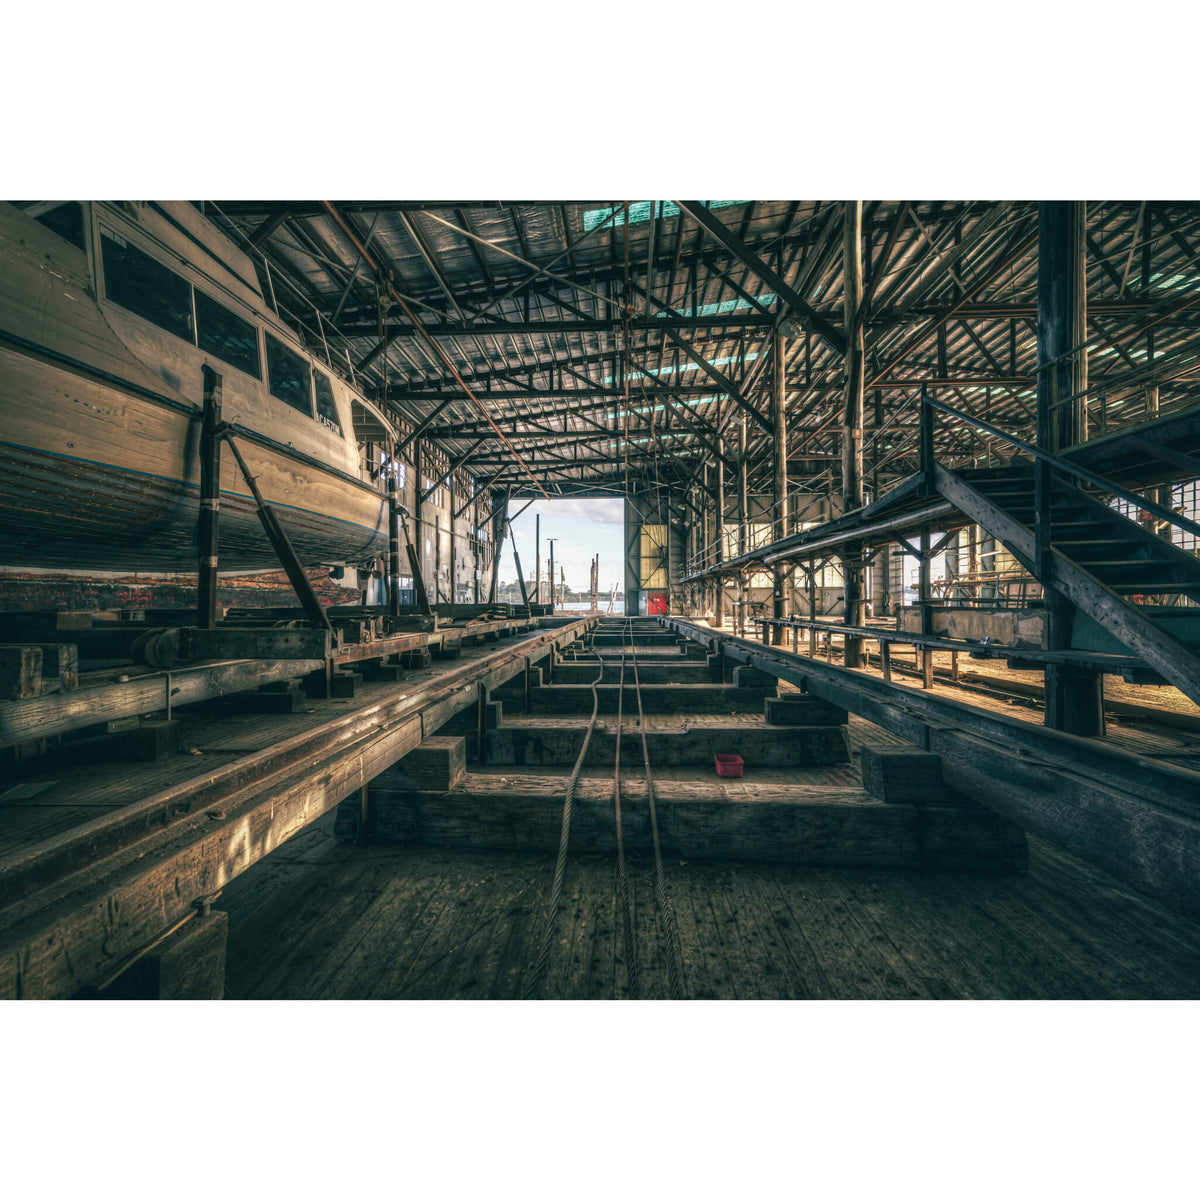 Sleeper Row | Halvorsens Boat Yard